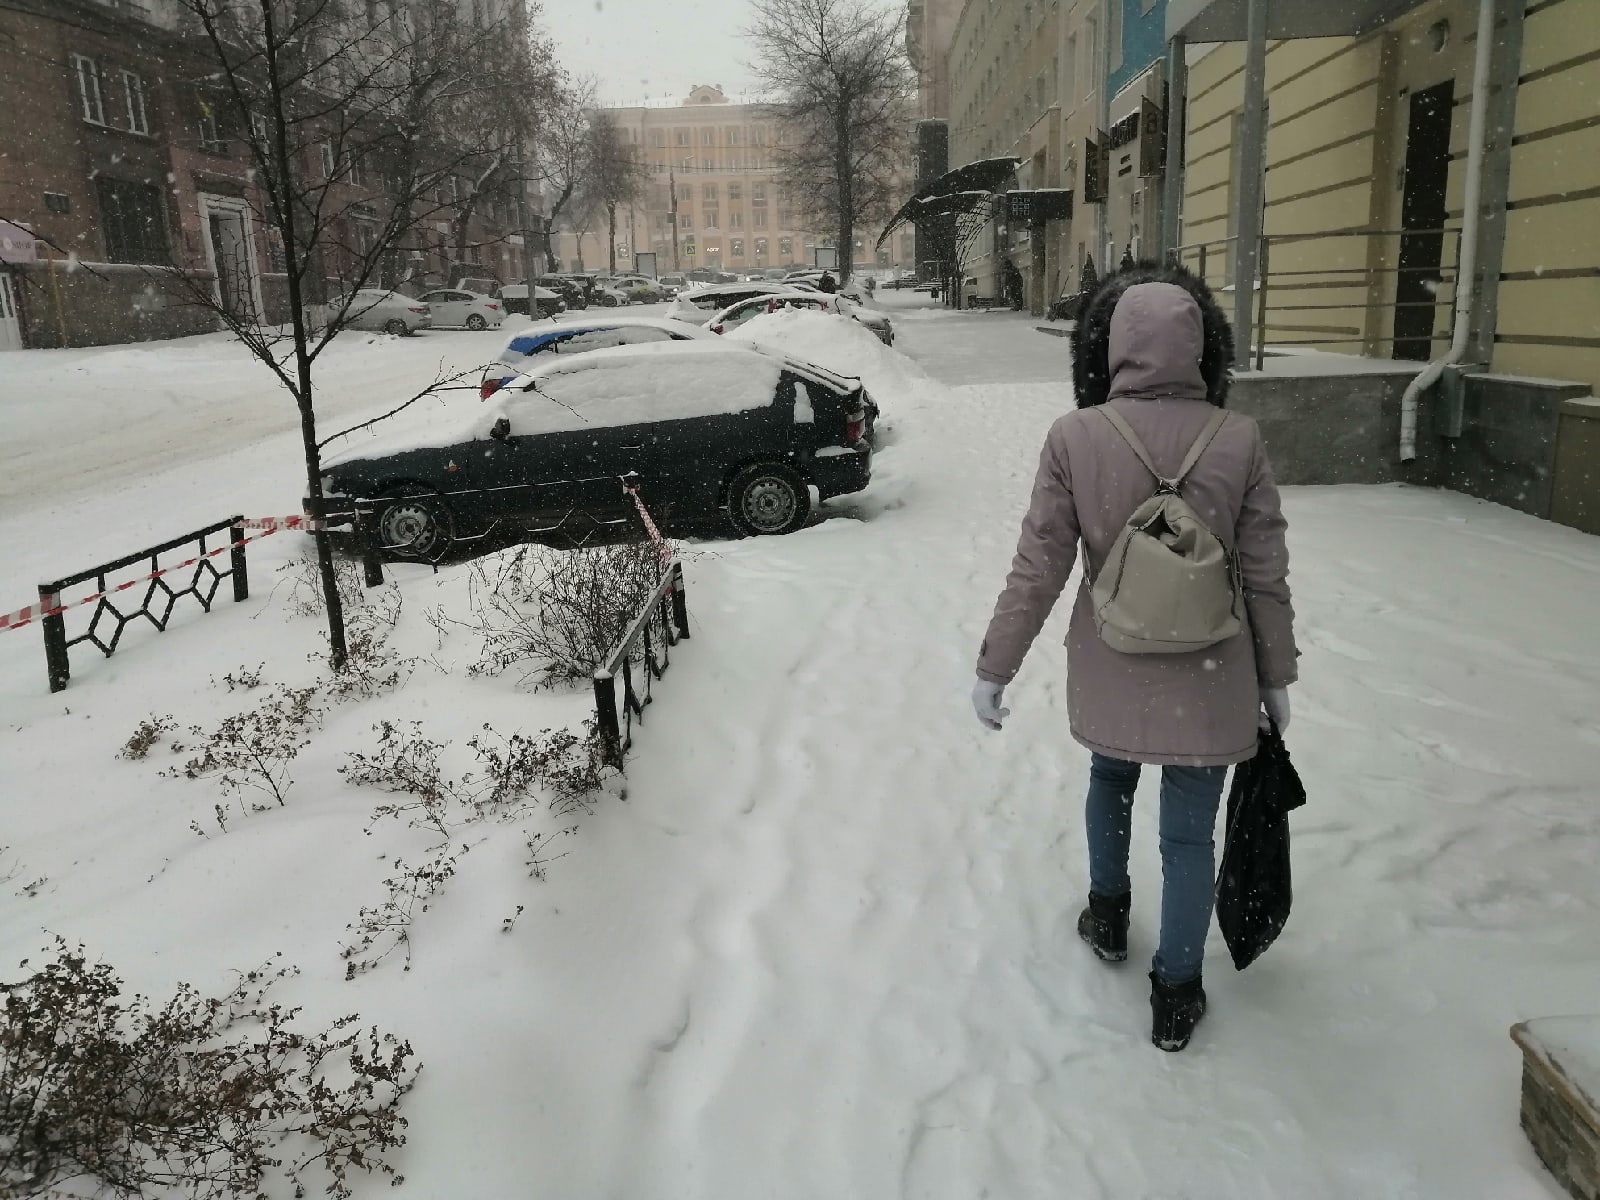 Отменят ли школу 22 февраля в челябинске. Челябинск Морозы. Фото 2 декабря, похолодало. Потеплеет до плюс 3. Доброе утро Мороз- 33 градуса.